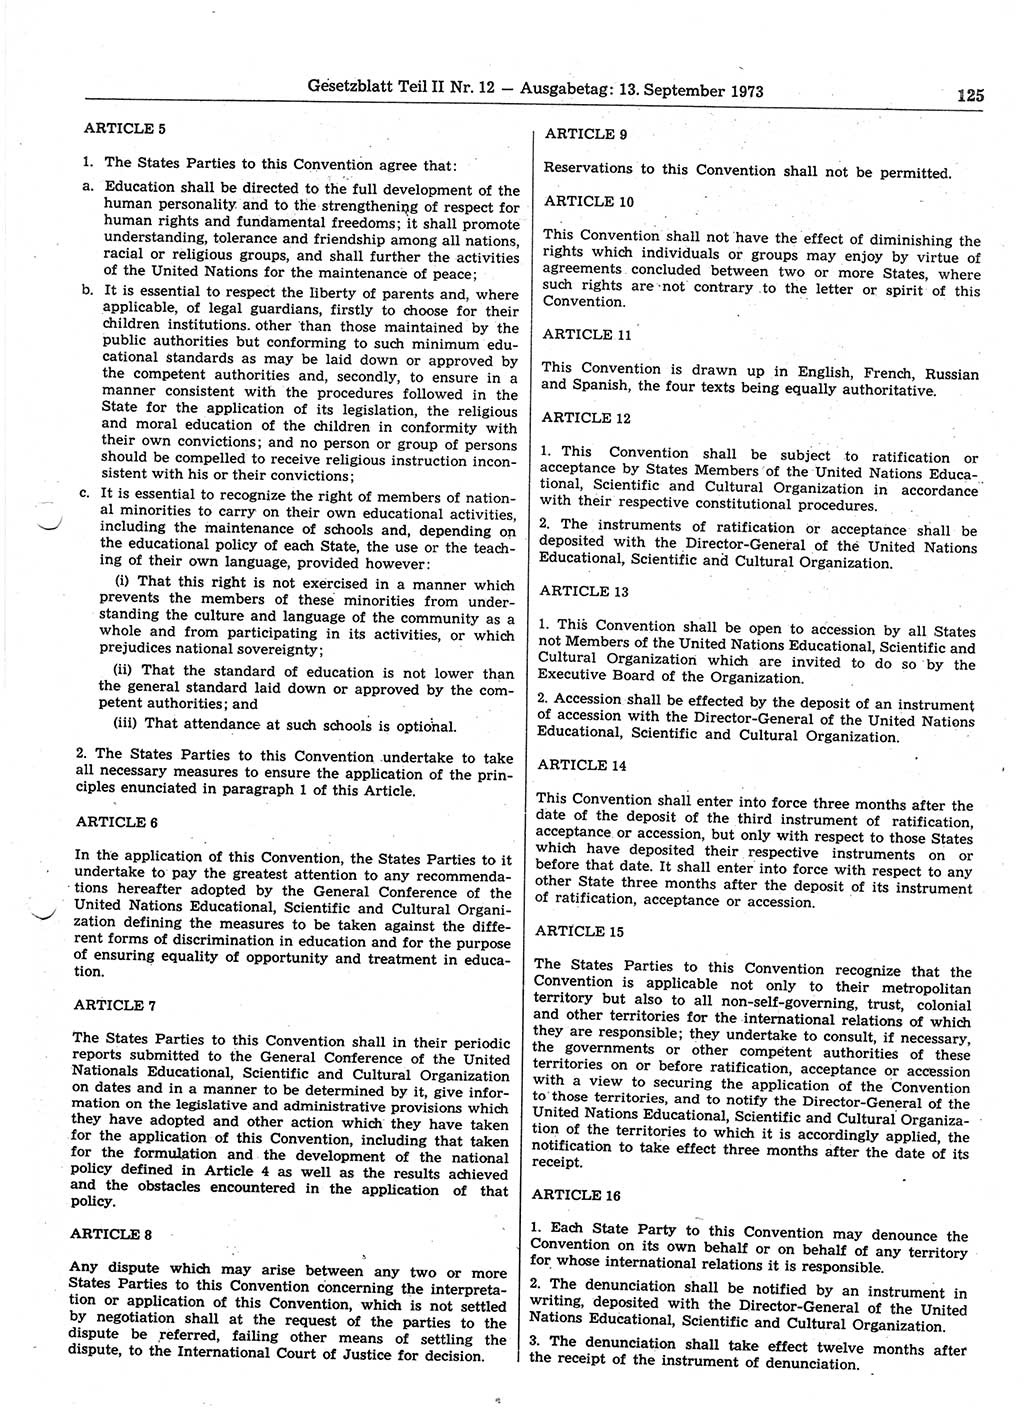 Gesetzblatt (GBl.) der Deutschen Demokratischen Republik (DDR) Teil ⅠⅠ 1973, Seite 125 (GBl. DDR ⅠⅠ 1973, S. 125)